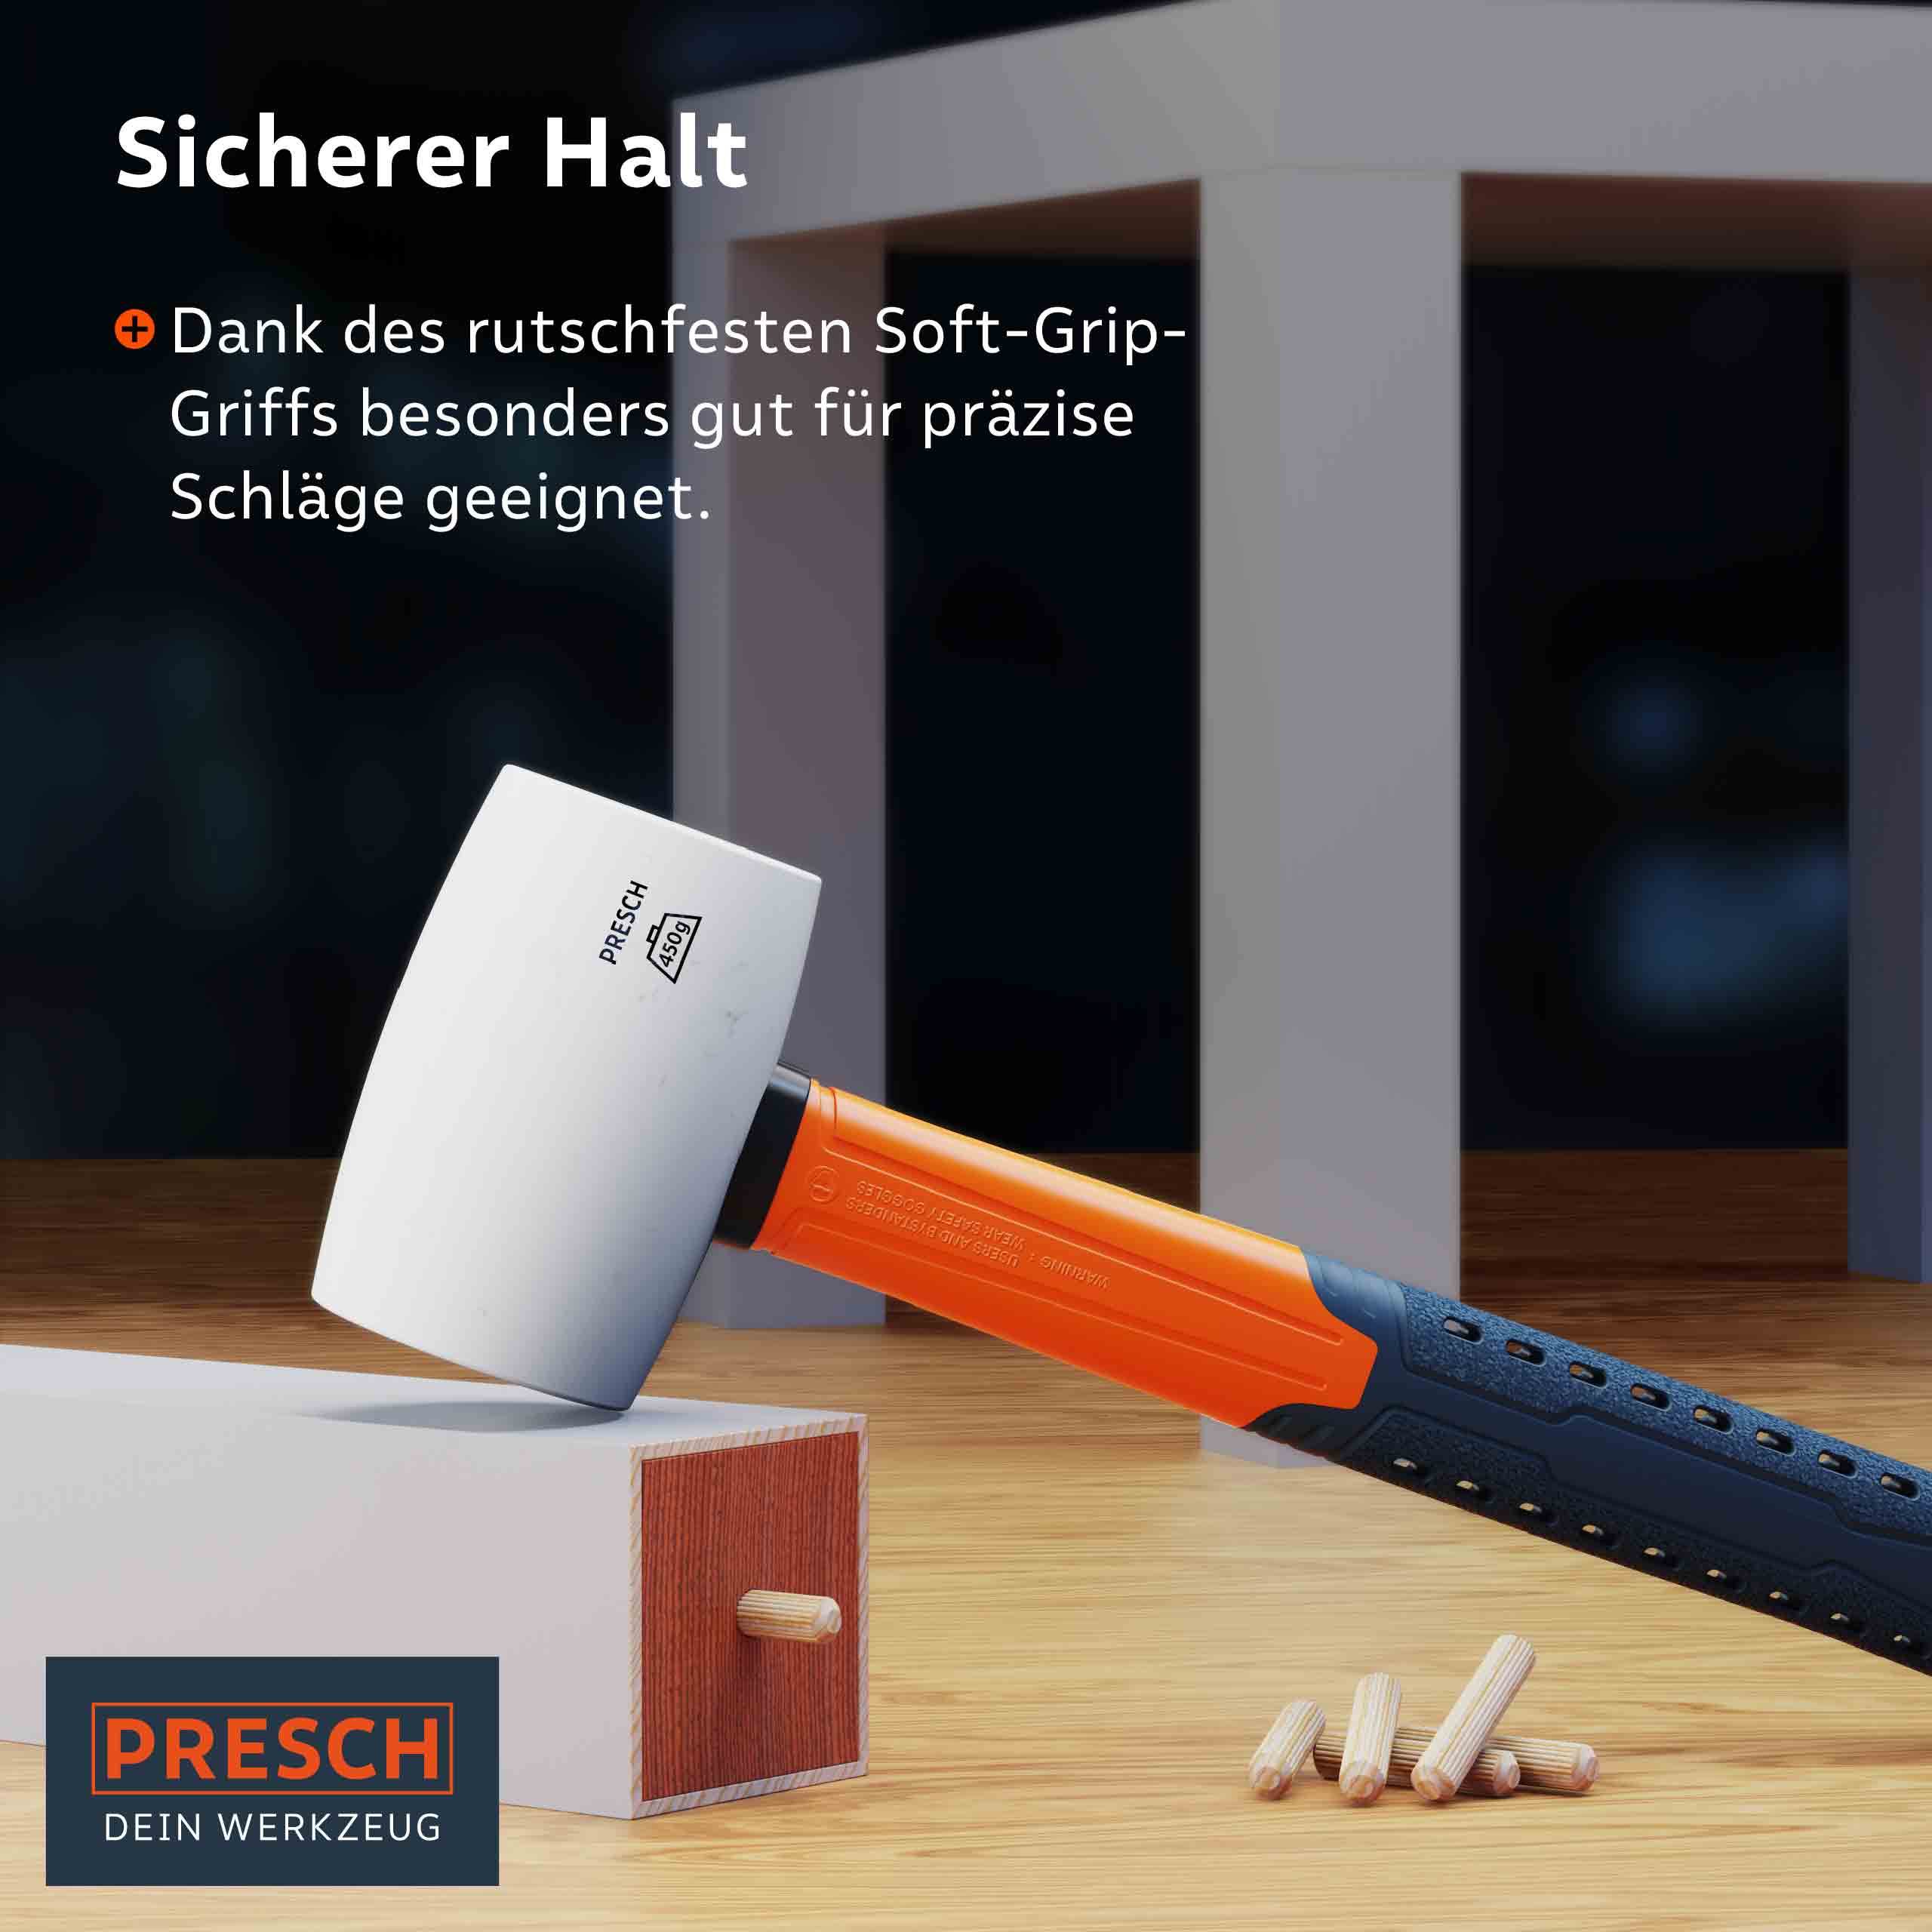 Presch Hammer mit rutschfestem Soft-Grip-Griff für präzise Handwerksarbeiten und Zimmermannstätigkeiten.